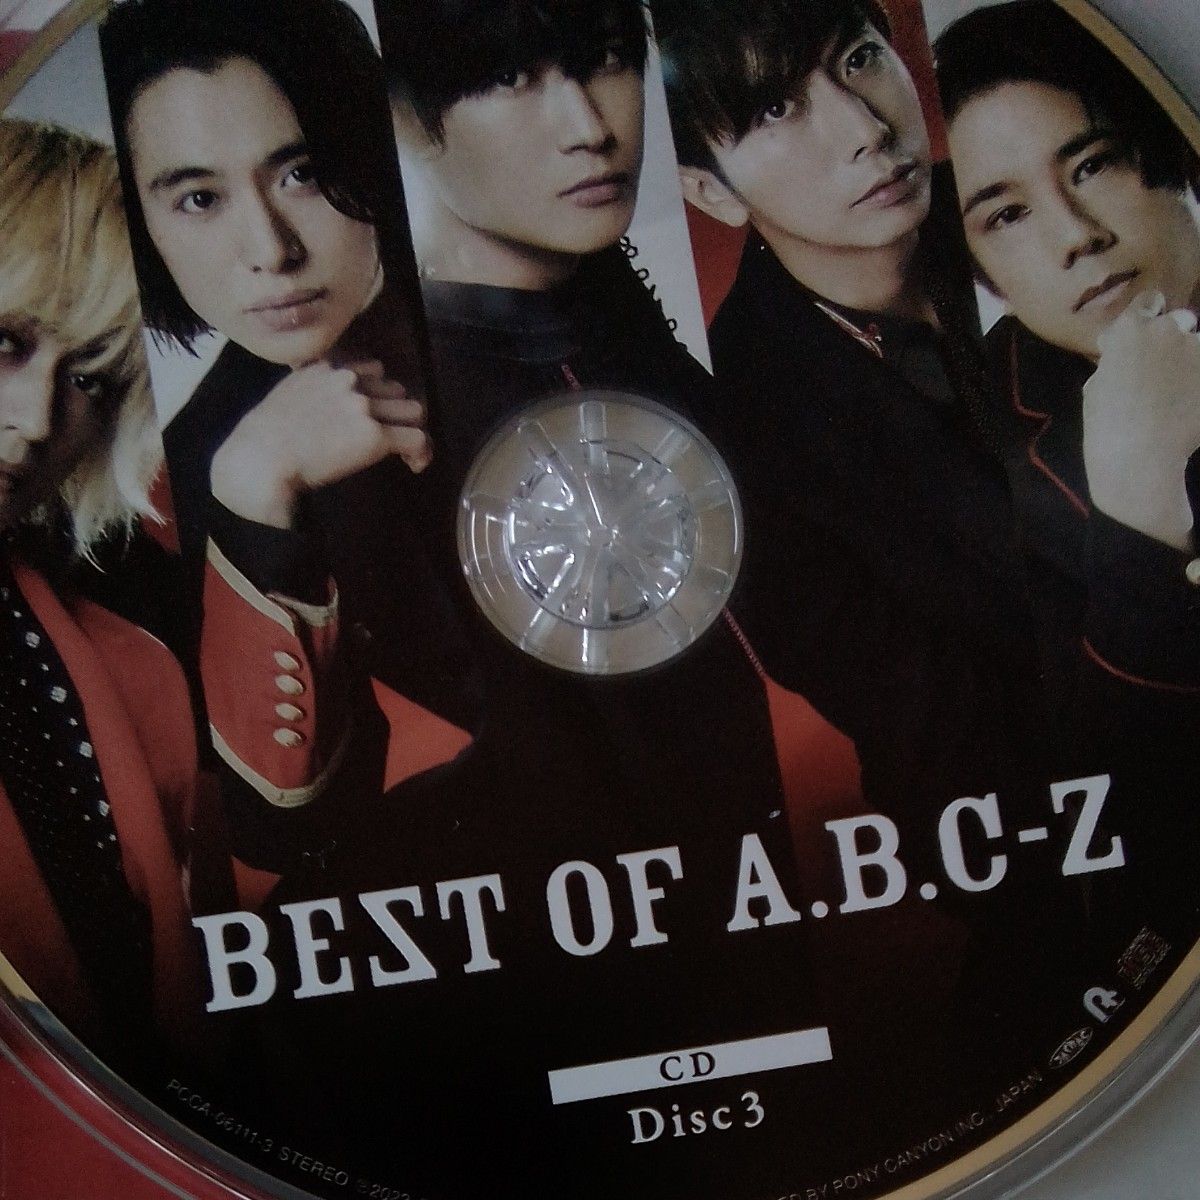 【送料無料】通常盤Z チェンジングジャケット5セット A.B.C-Z 3CD/BEST OF A.B.C-Z 